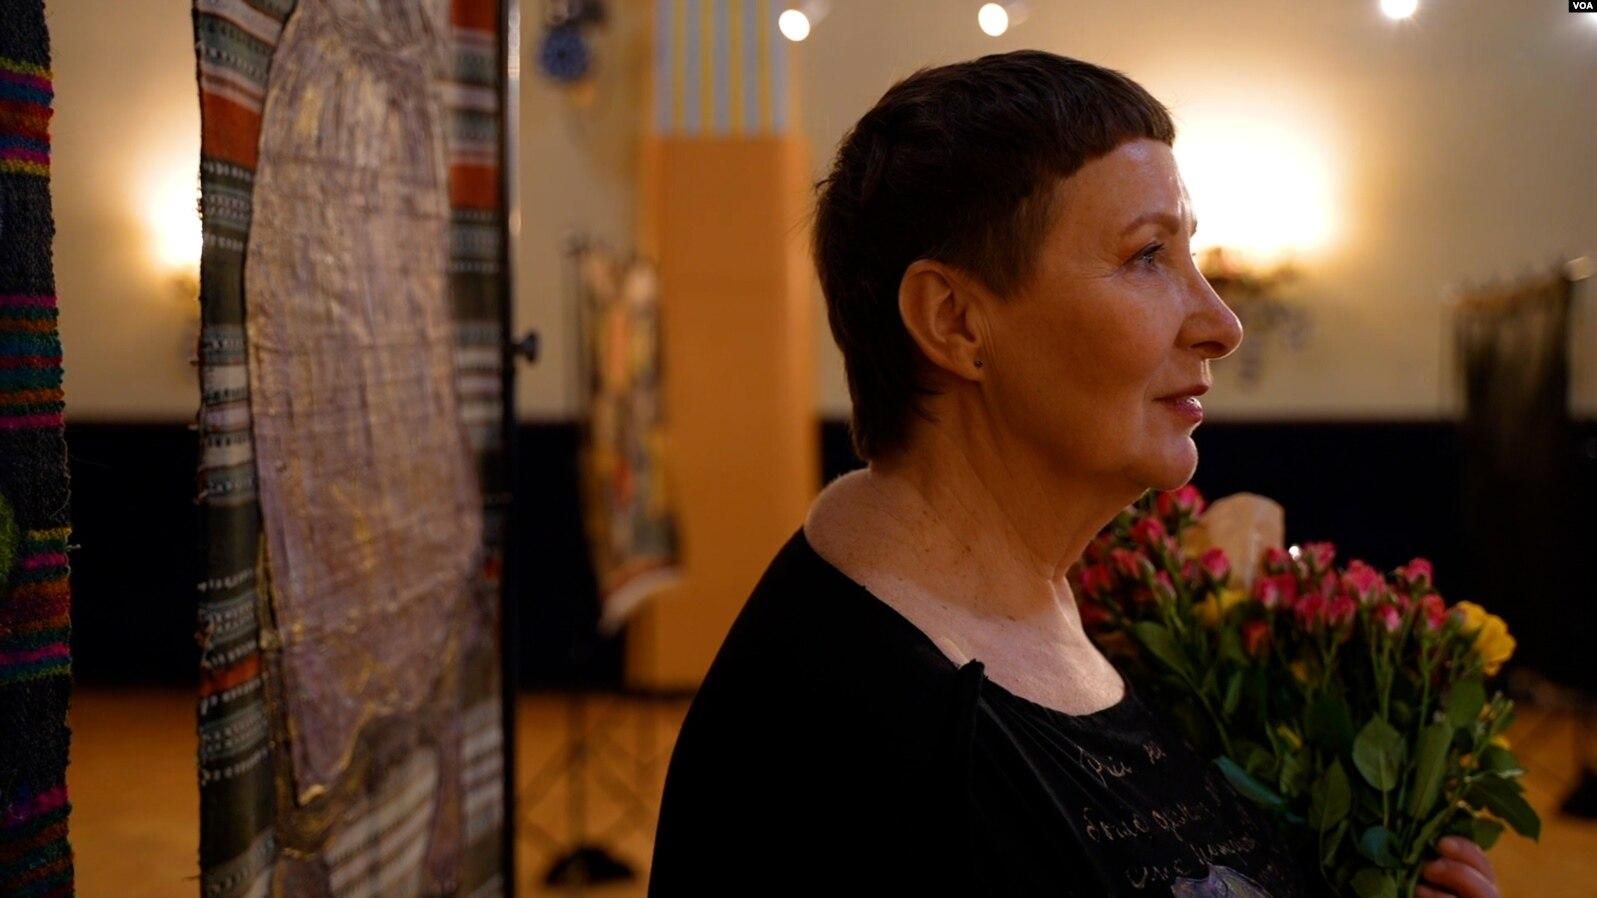 "Репортаж на ковре": украинская художница показала свои уникальные работы в США - Новости Одесса - Закордон